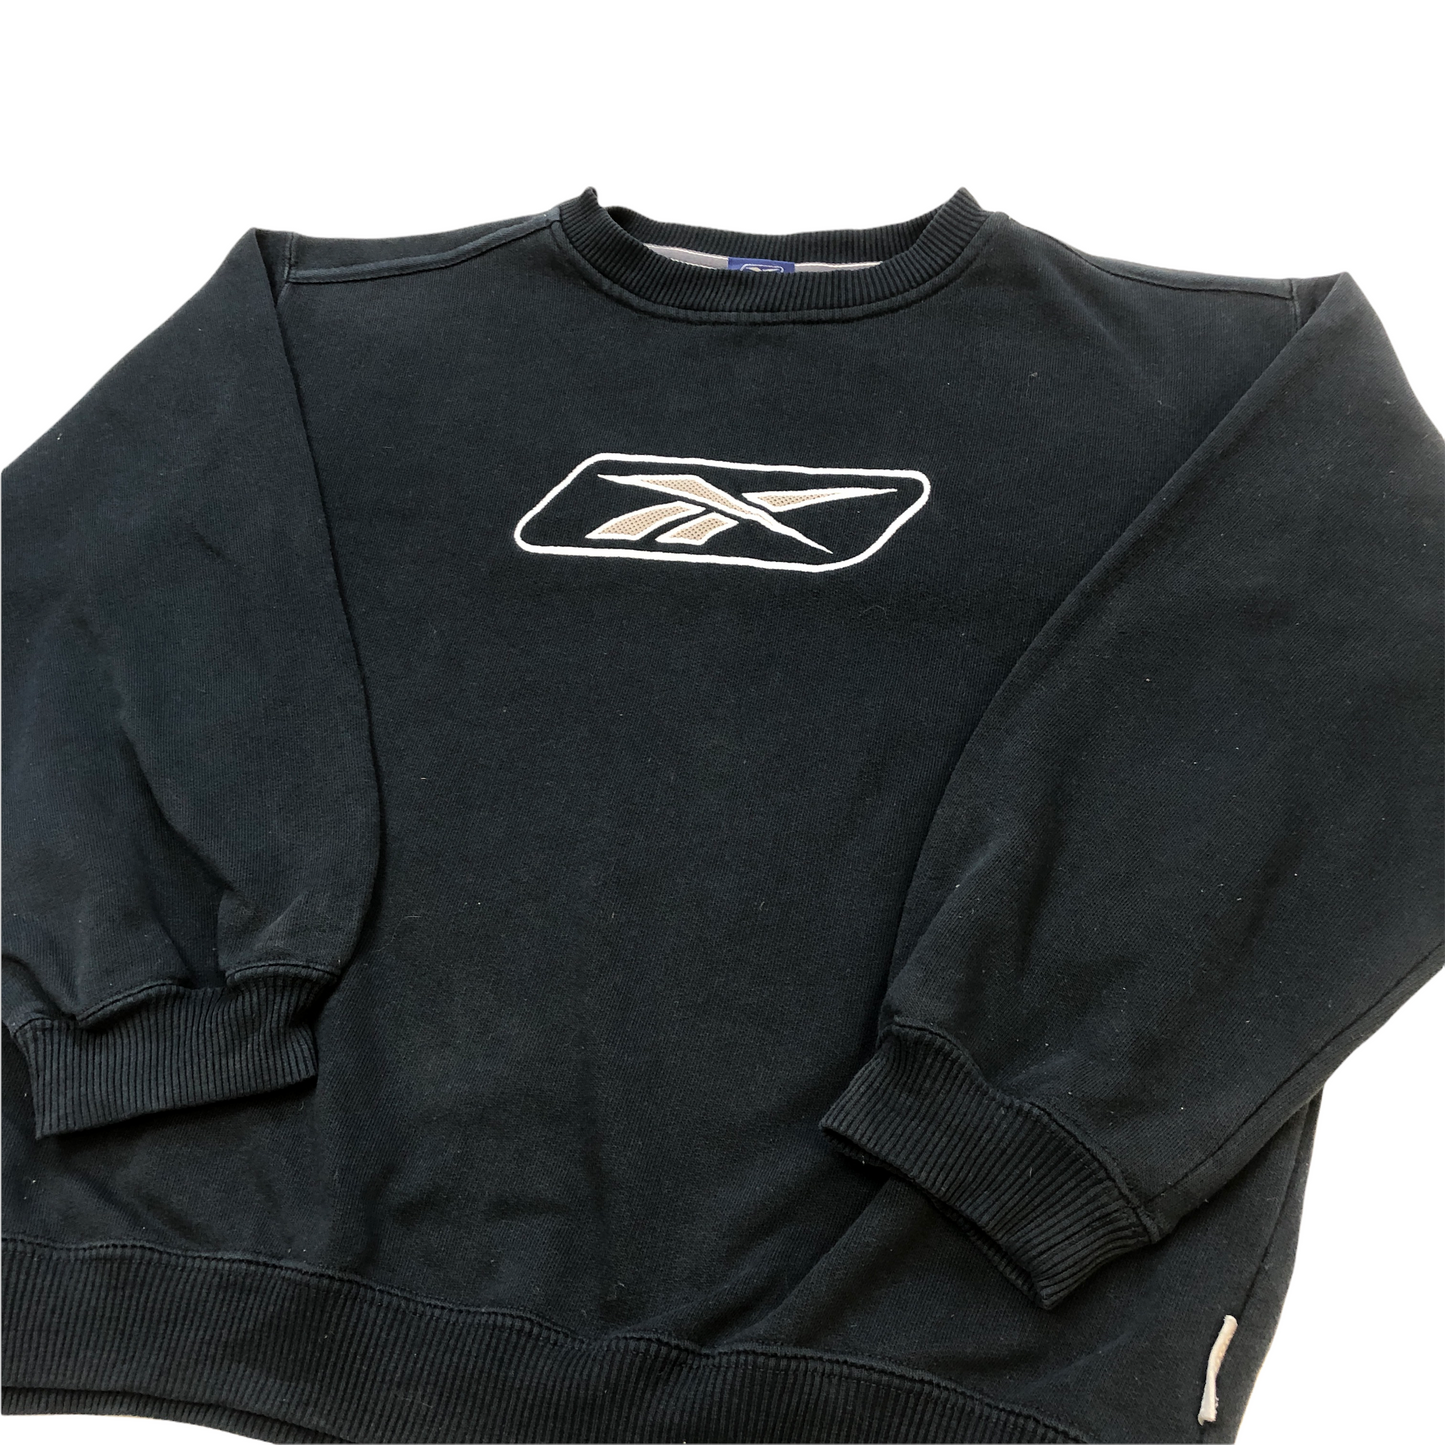 Vintage 90's Reebok Sweatshirt (Age 8-10)